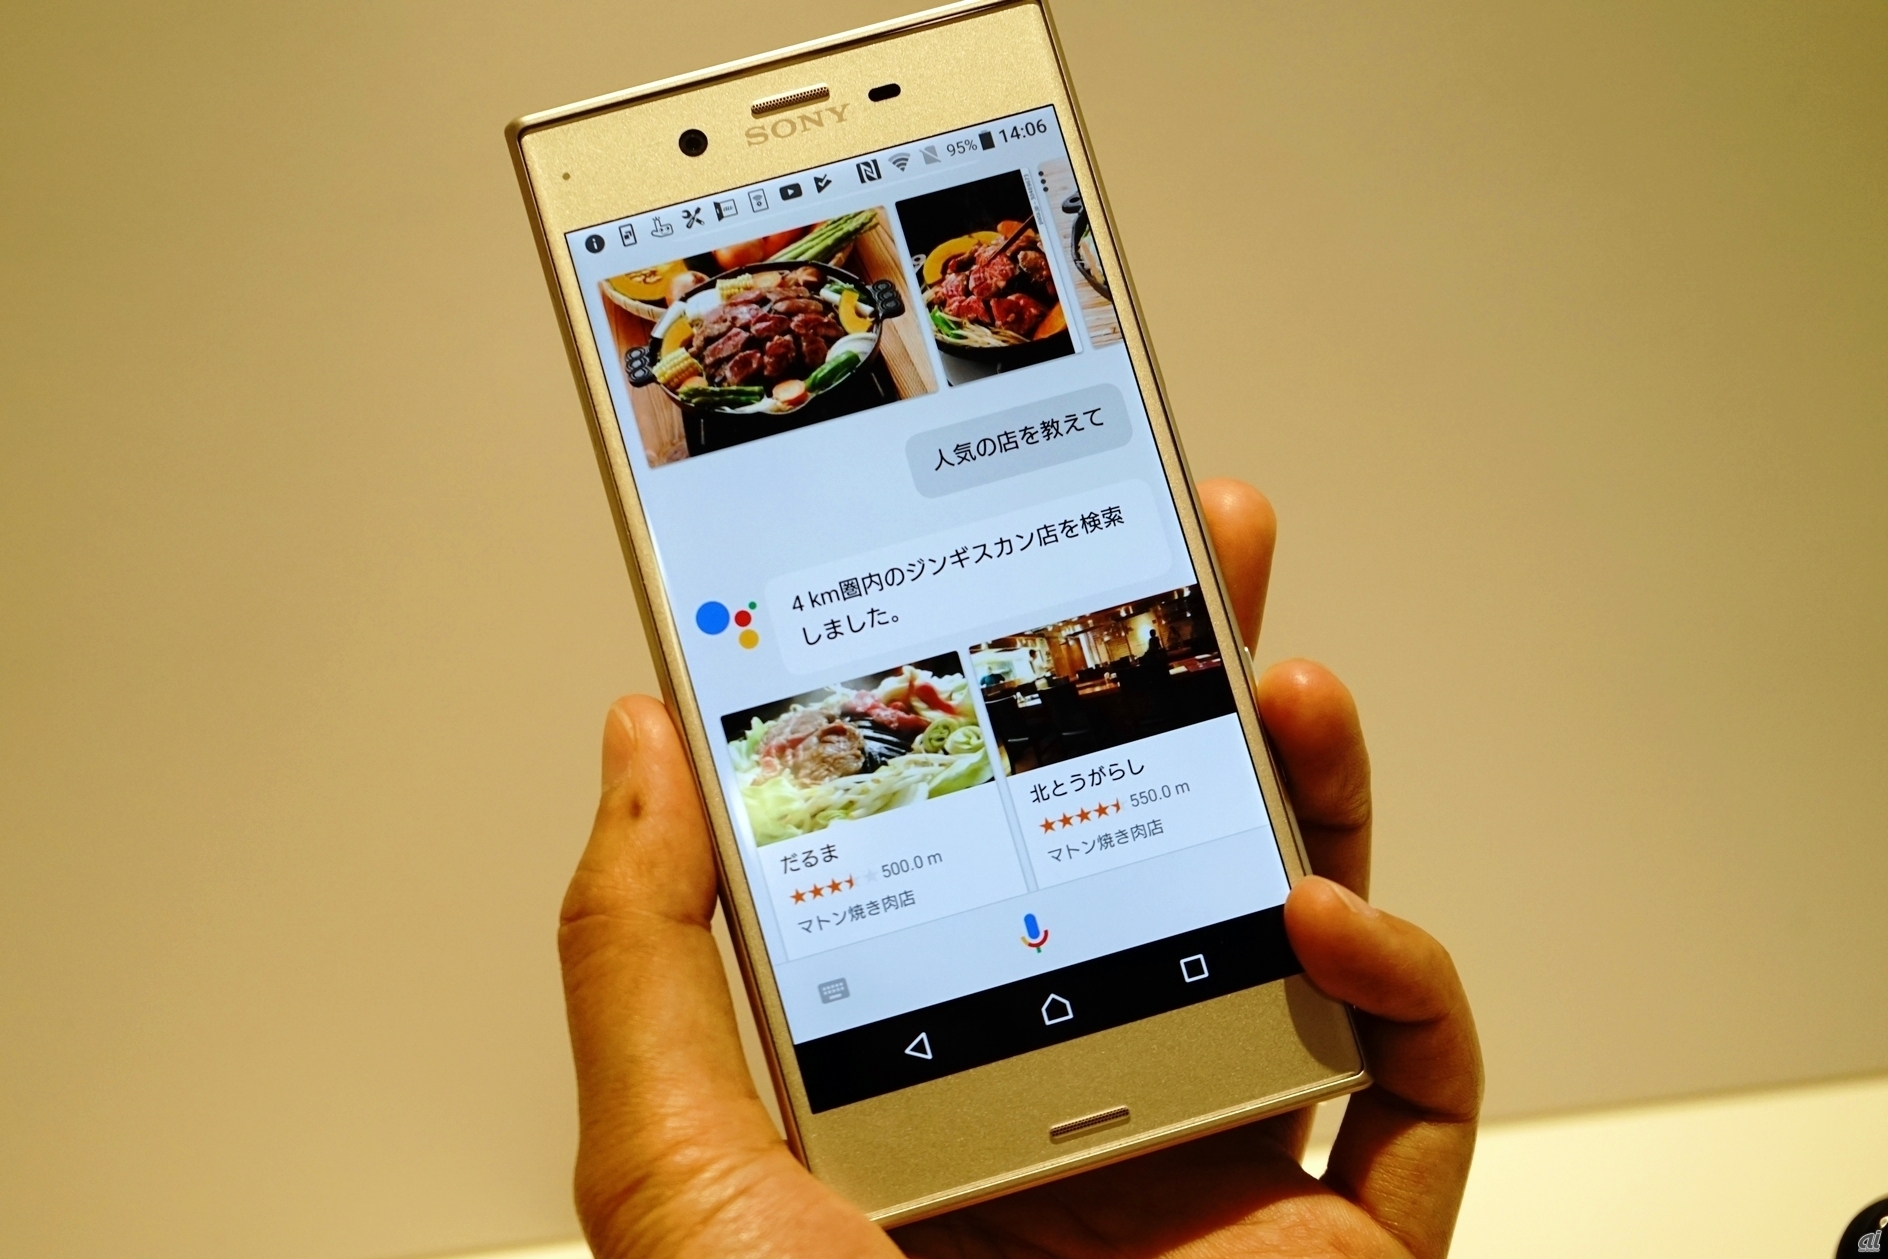 Androidスマートフォンが「Google アシスタント」の日本語版に対応